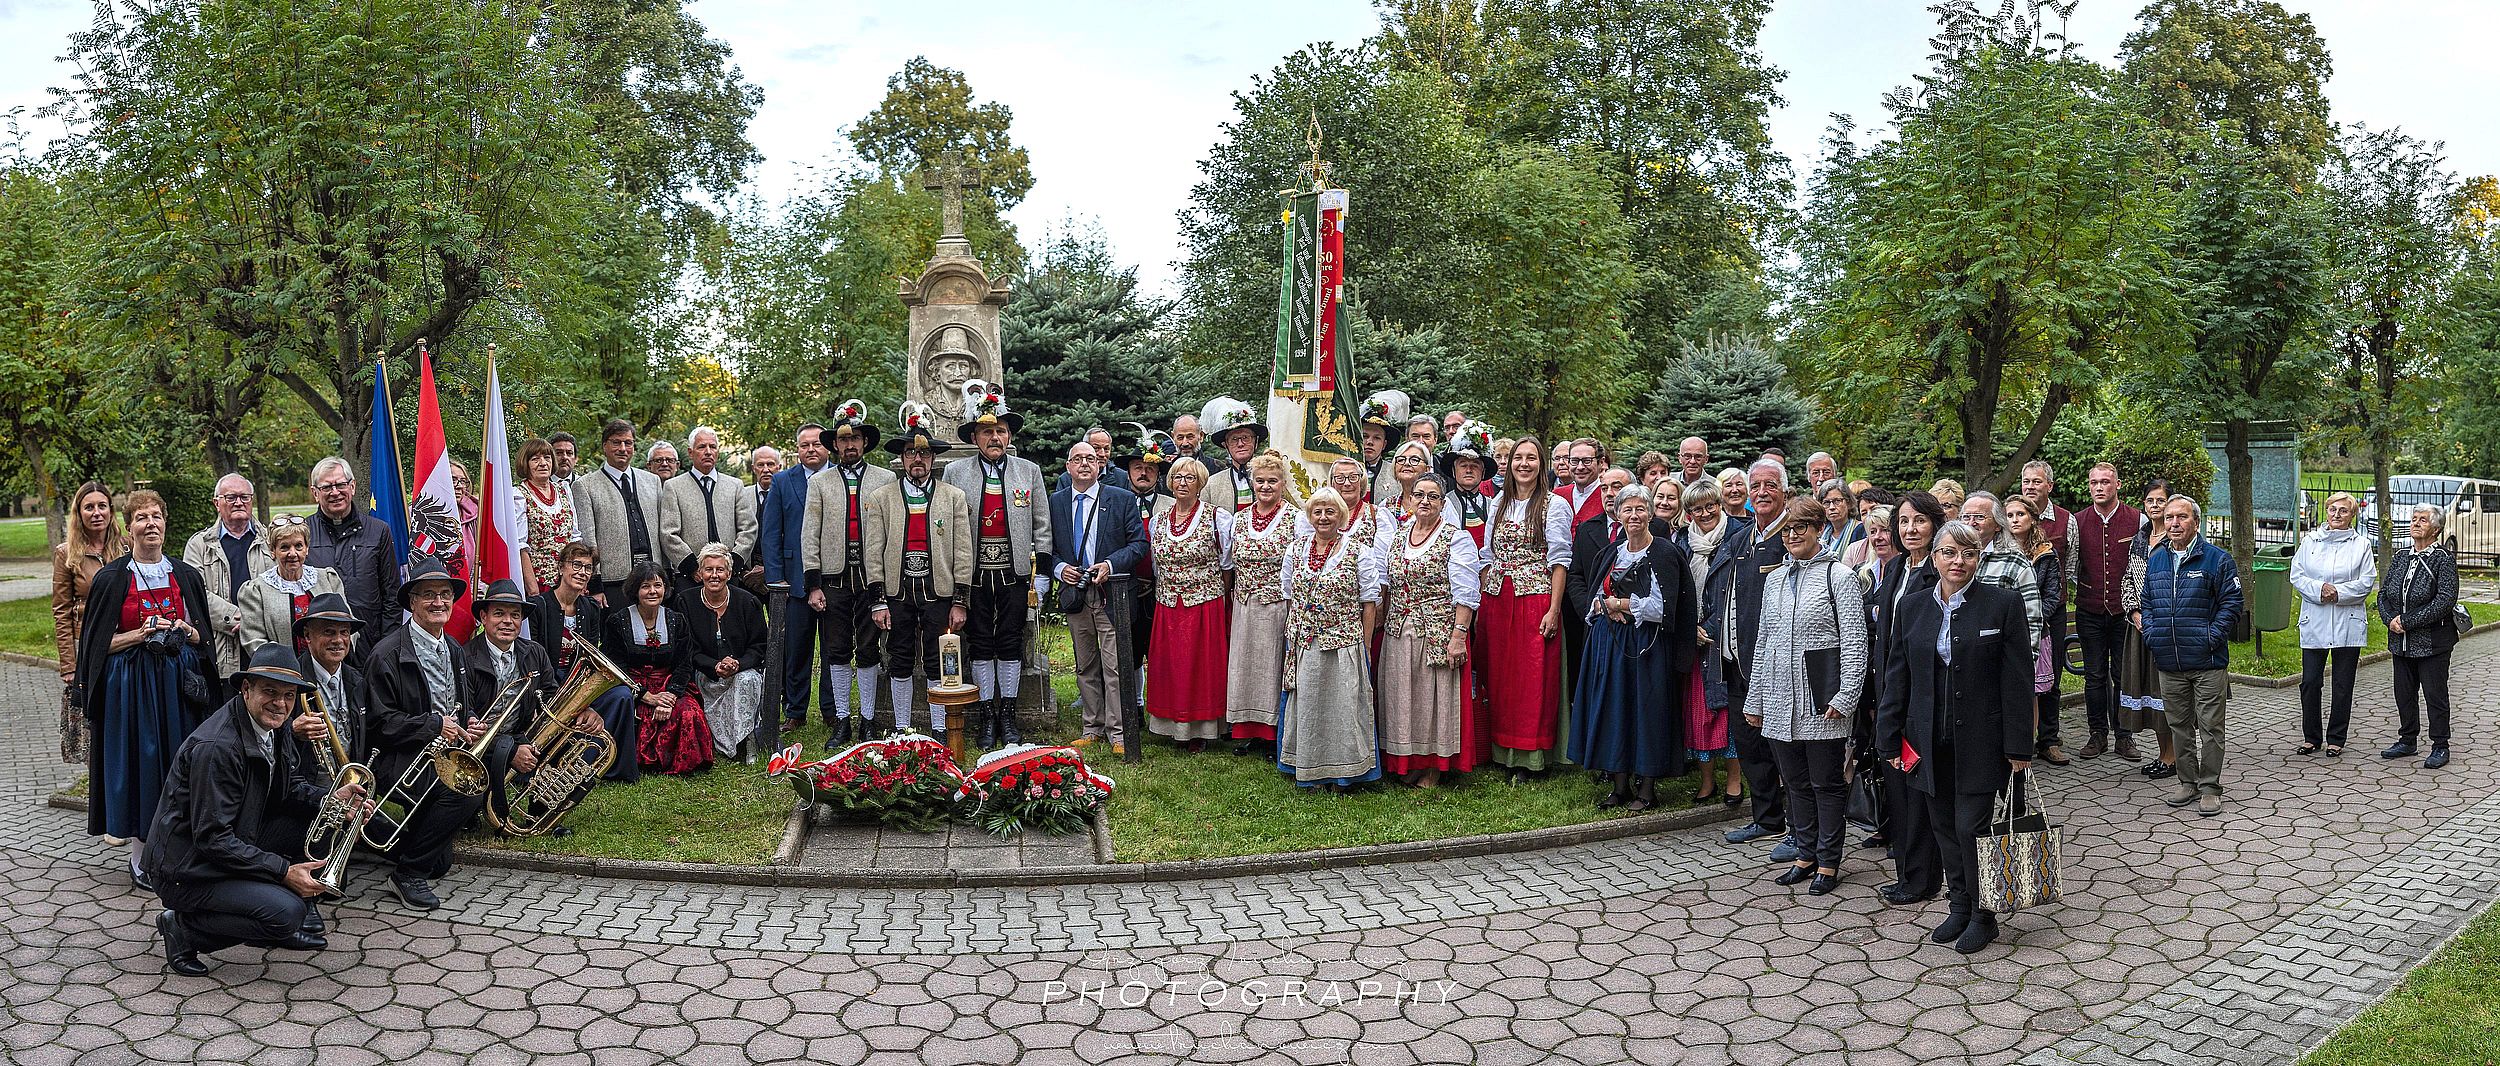 Alle Gäste vor dem Fleidl Denkmal - Foto Grzegorz Truchanowicz